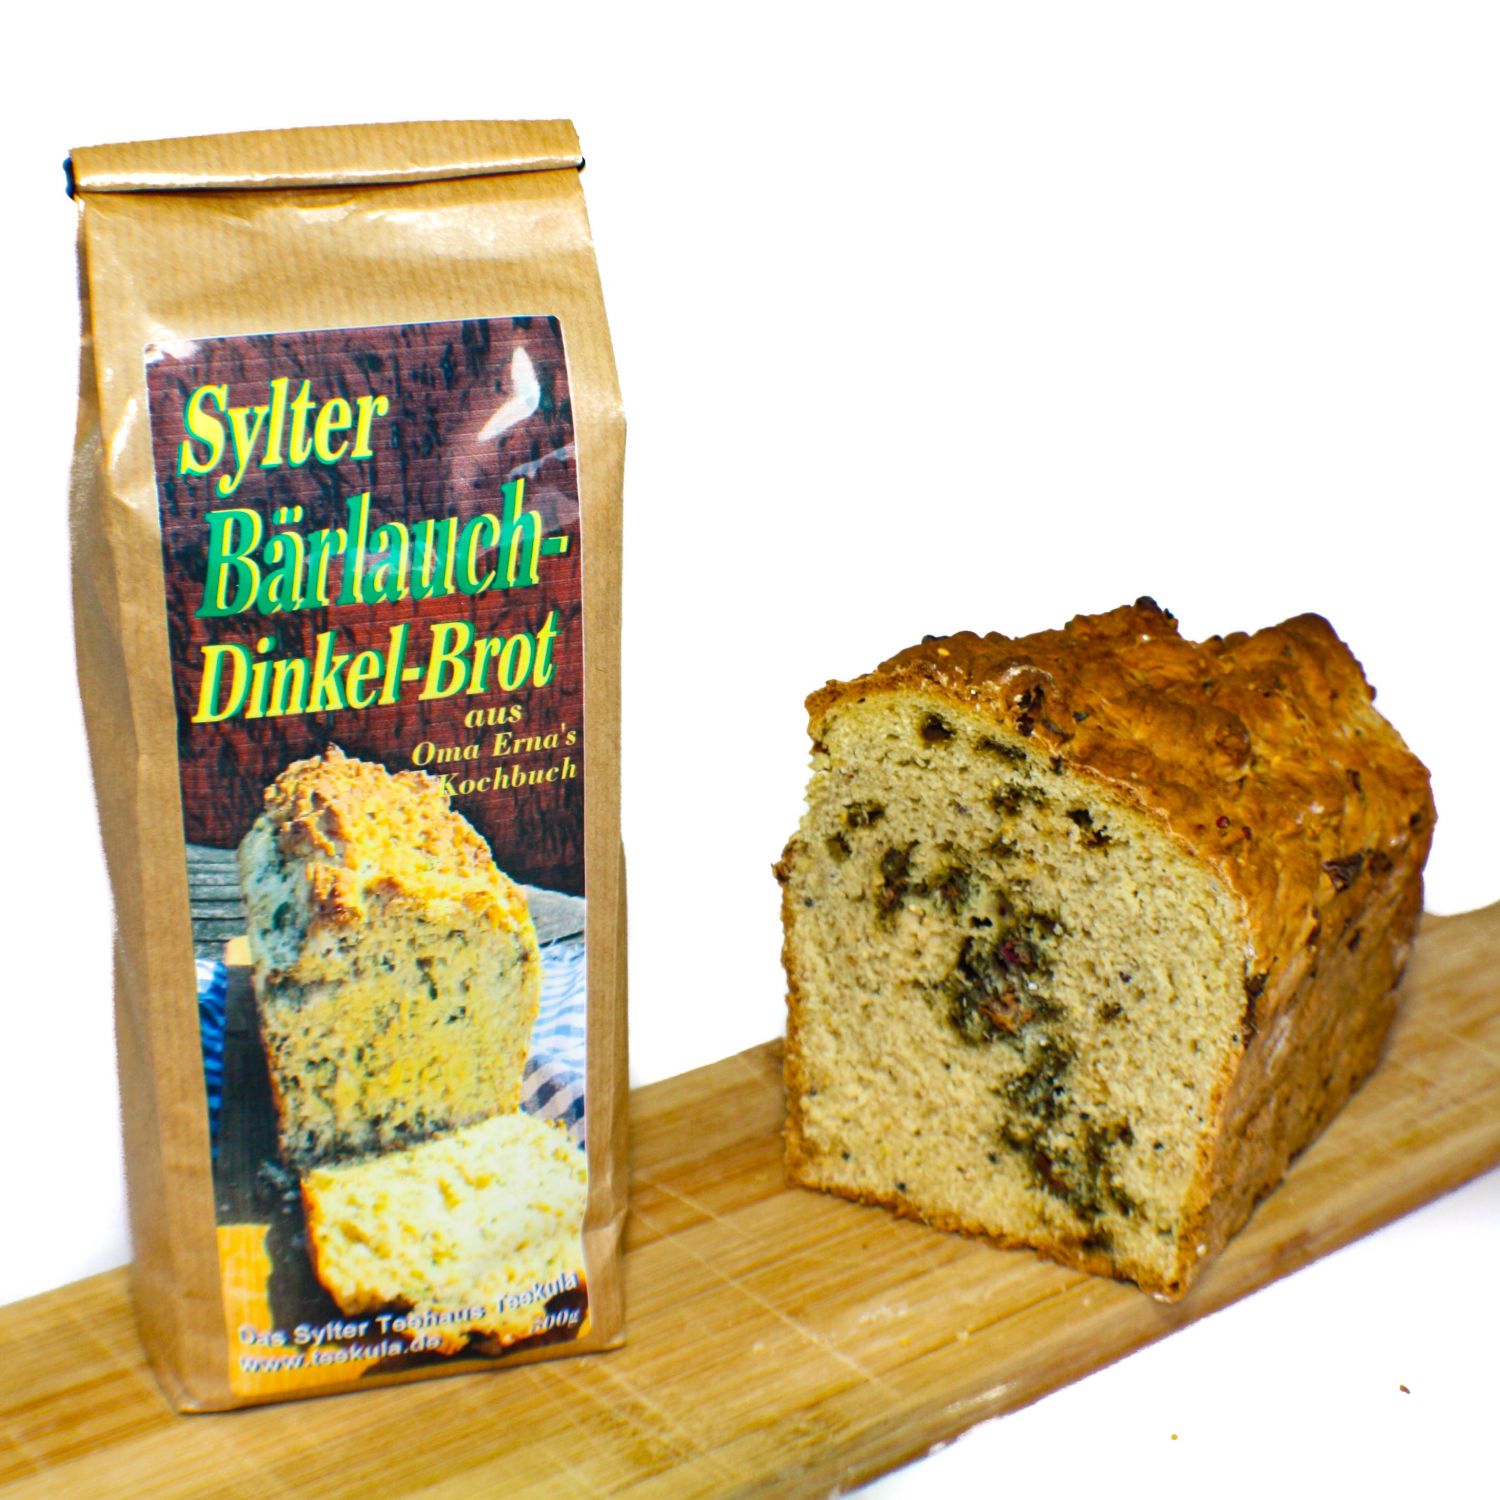 Sylter Bärlauch-Dinkel-Brot